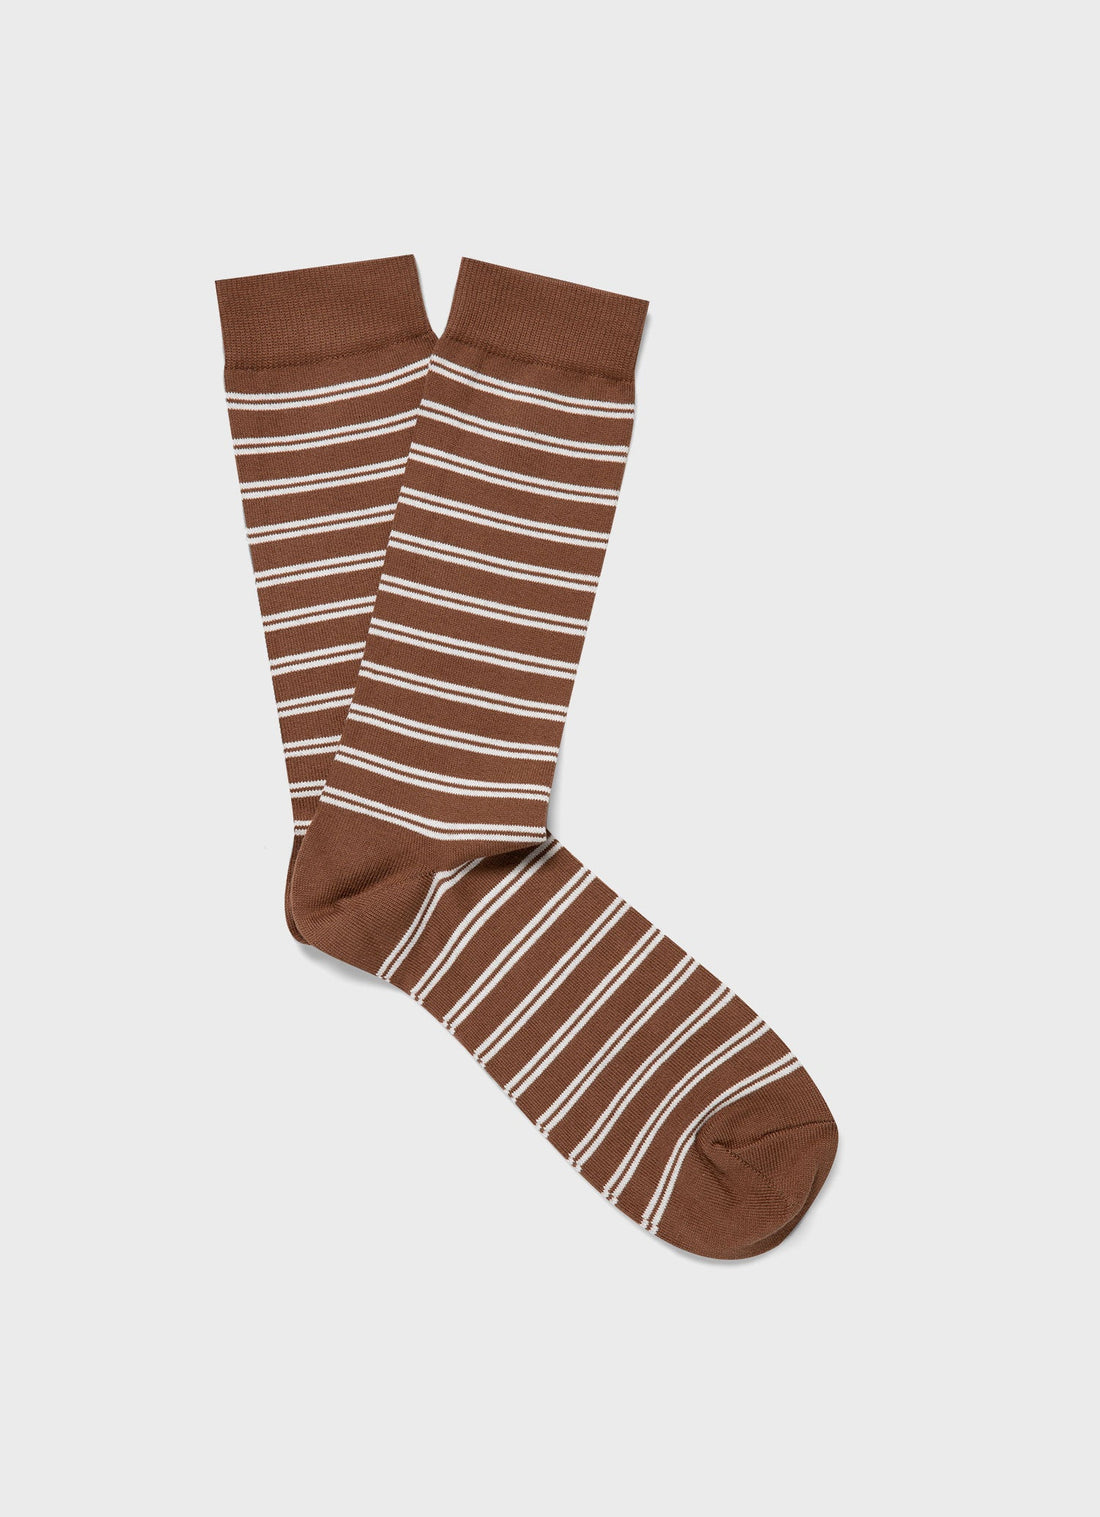 Men's Cotton Socks in Dark Sand/Ecru Tramline Stripe